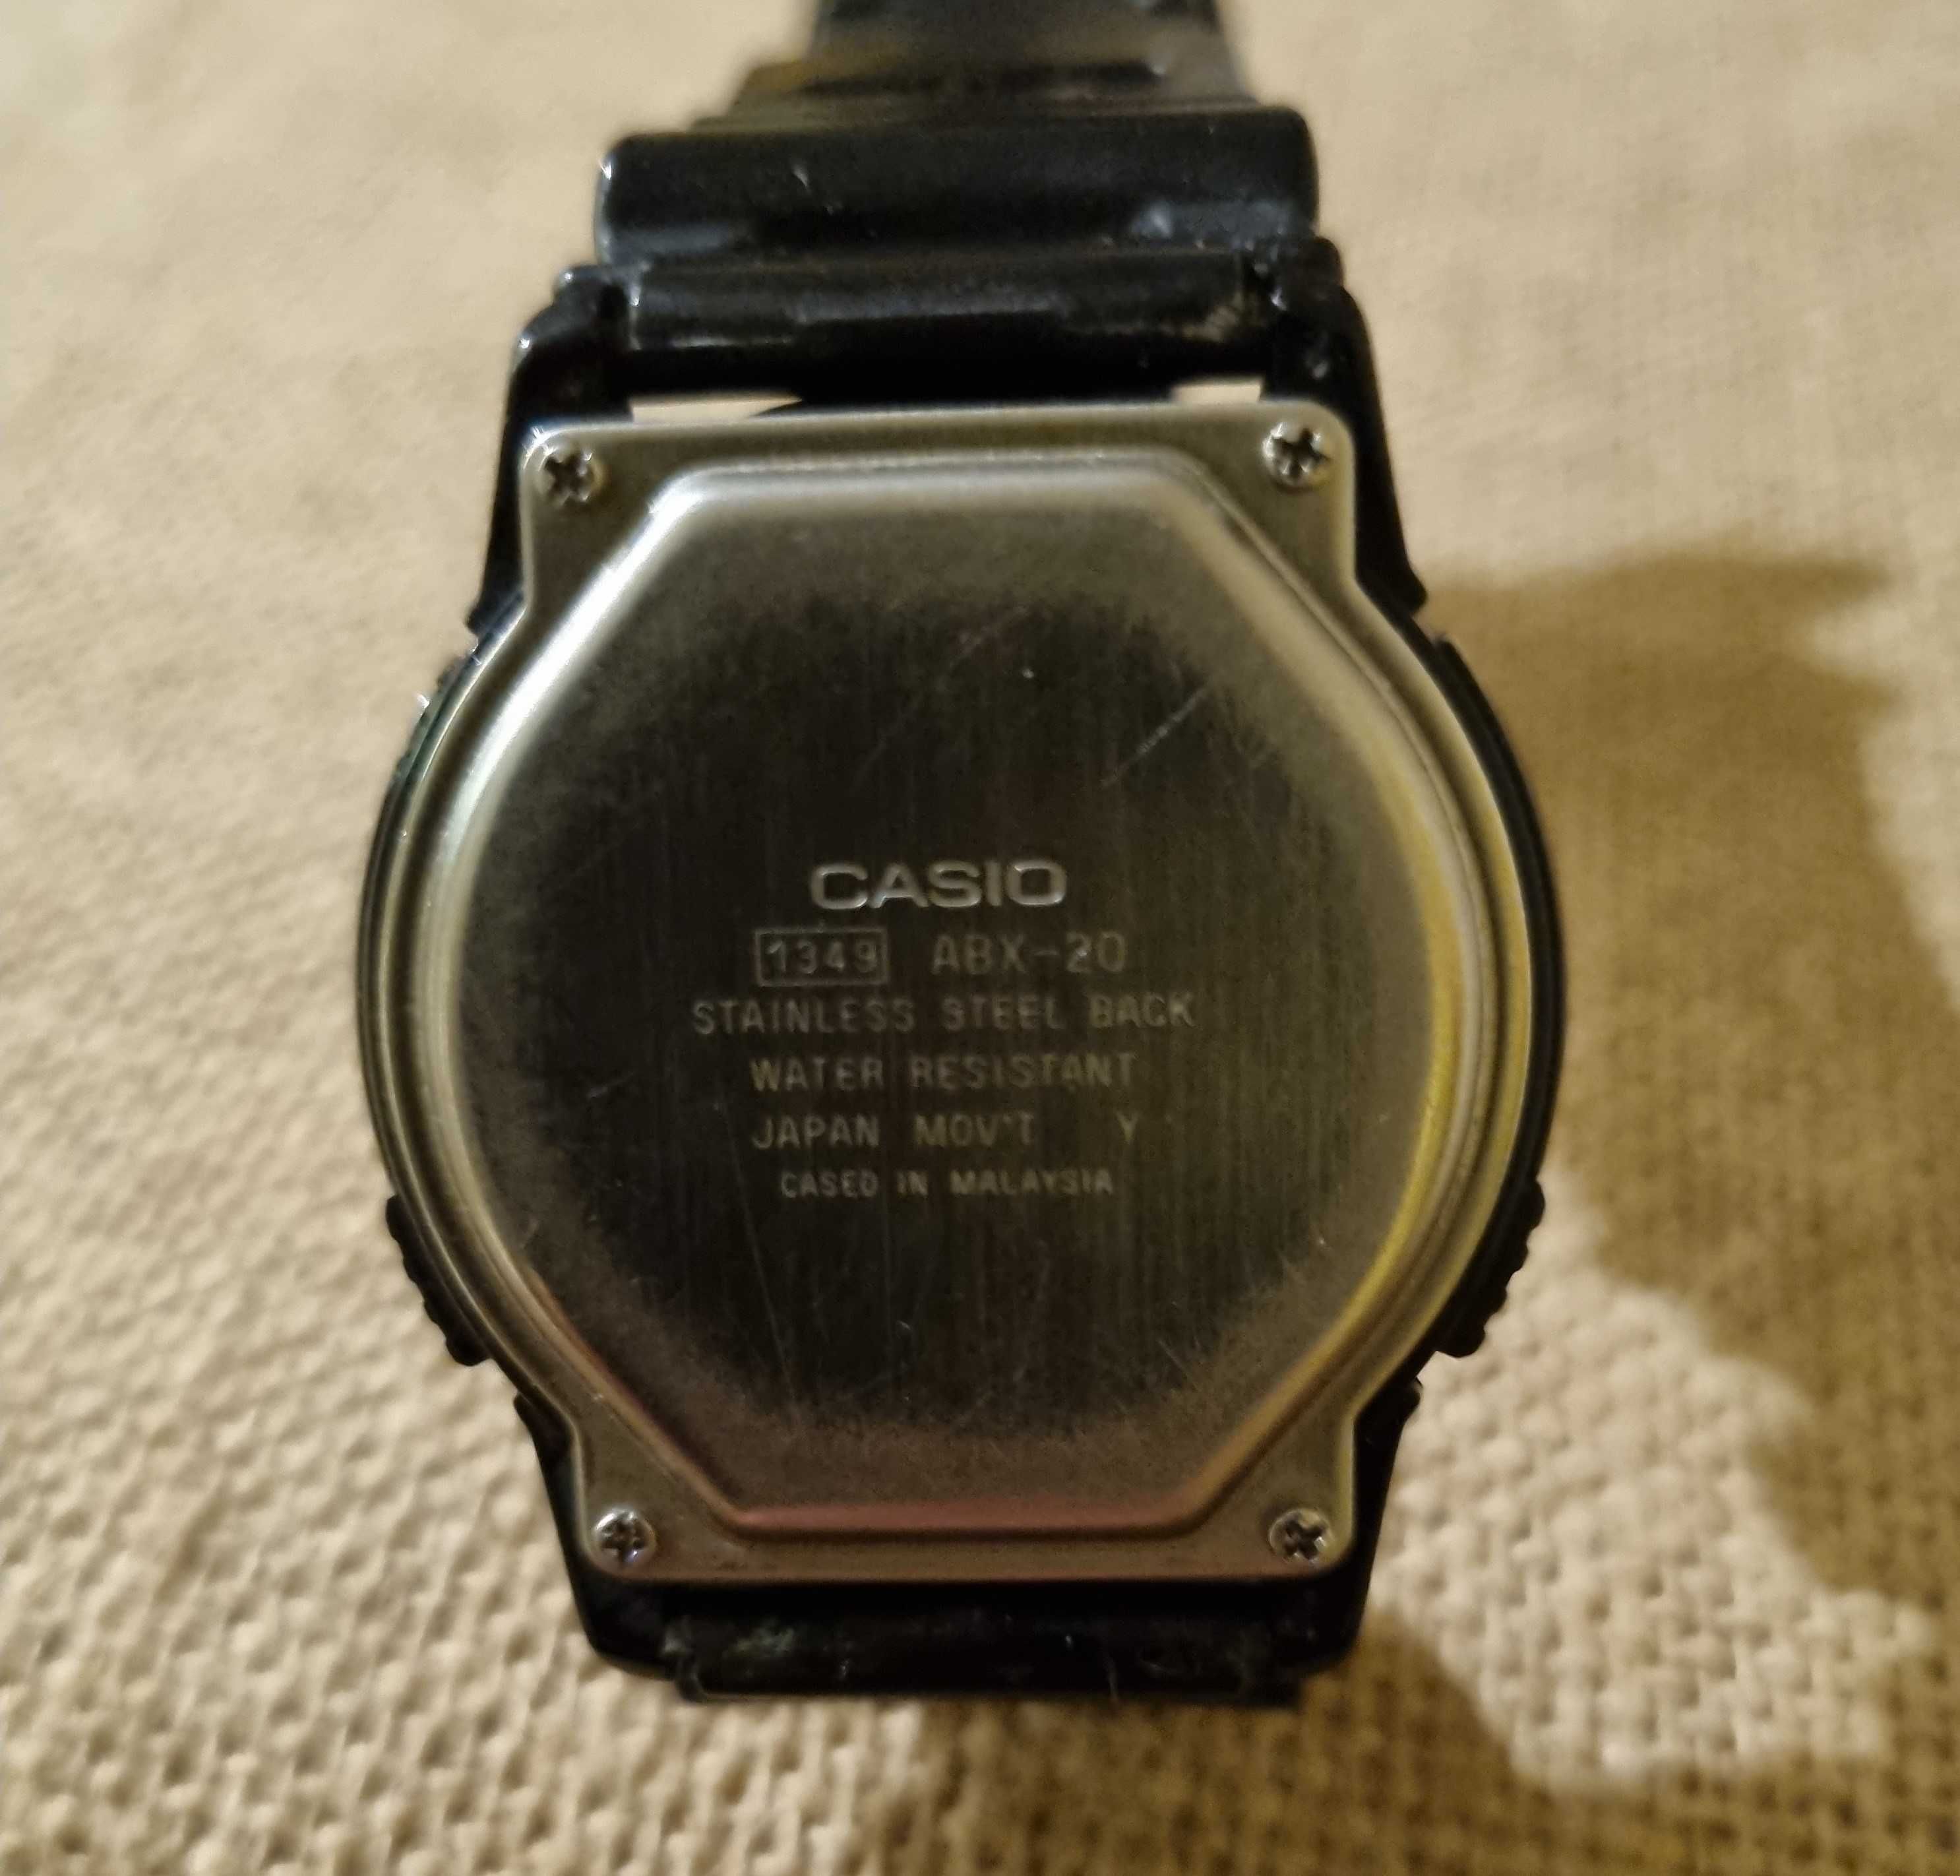 Zegarek Casio ABX-20